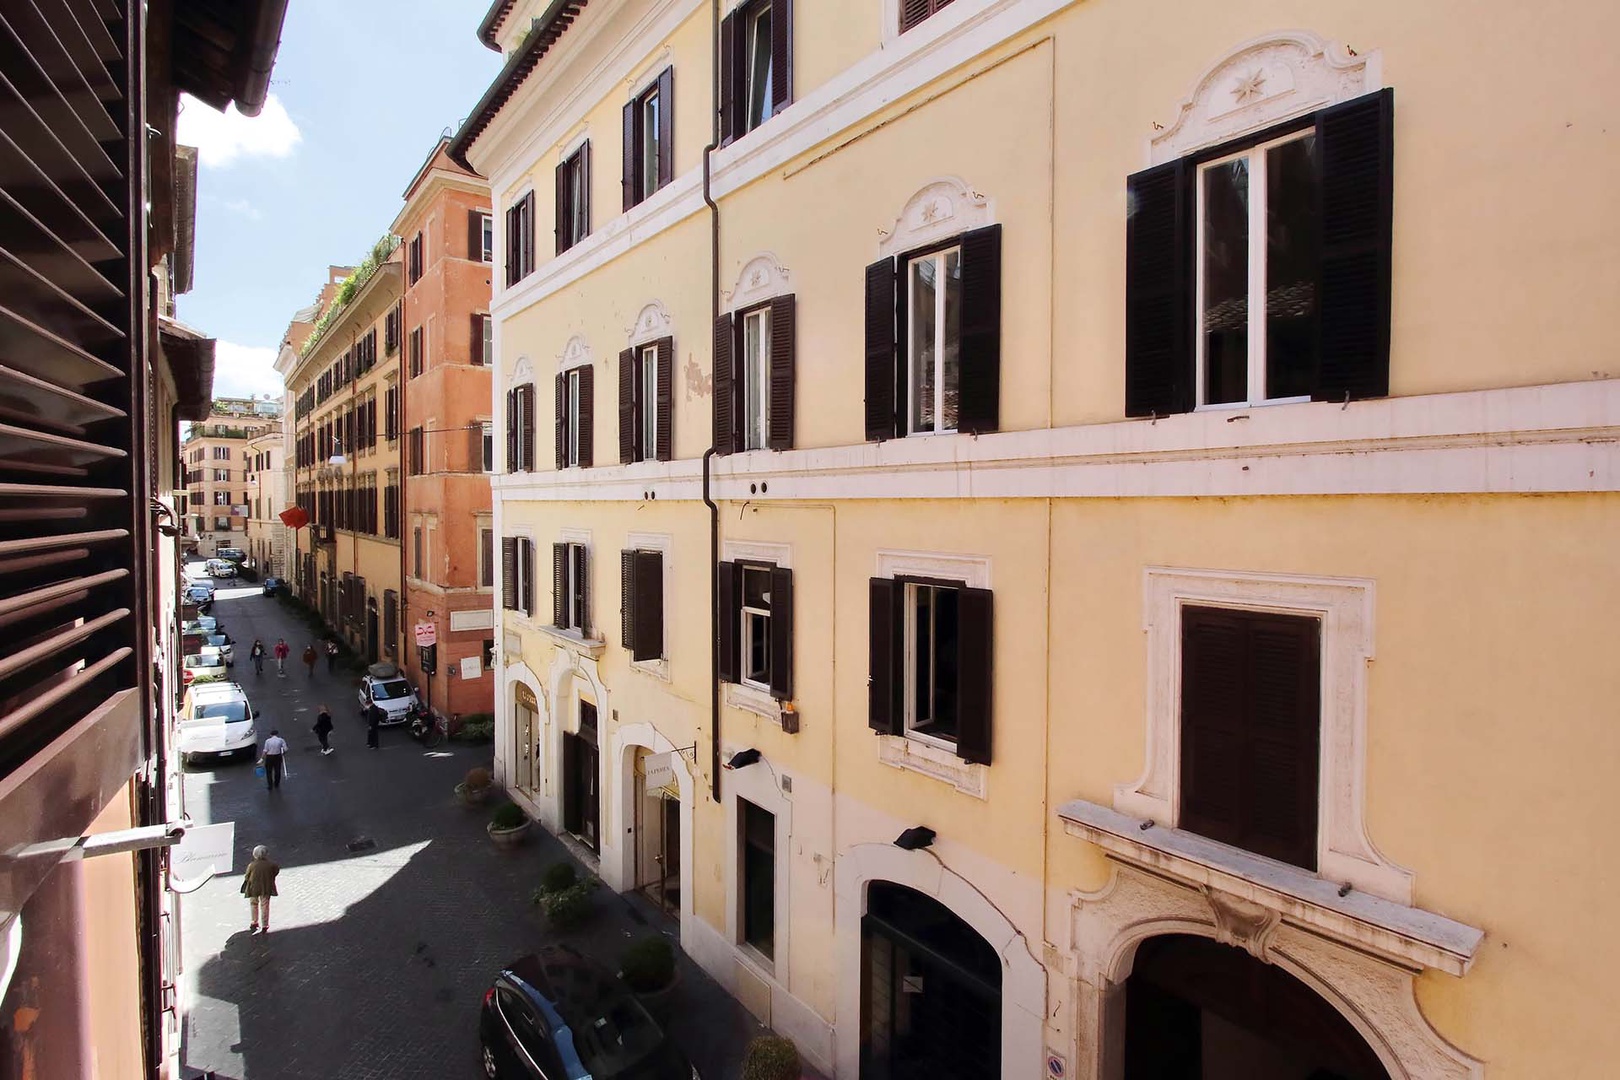 Elegant Via Bocca di Leone view from apartment